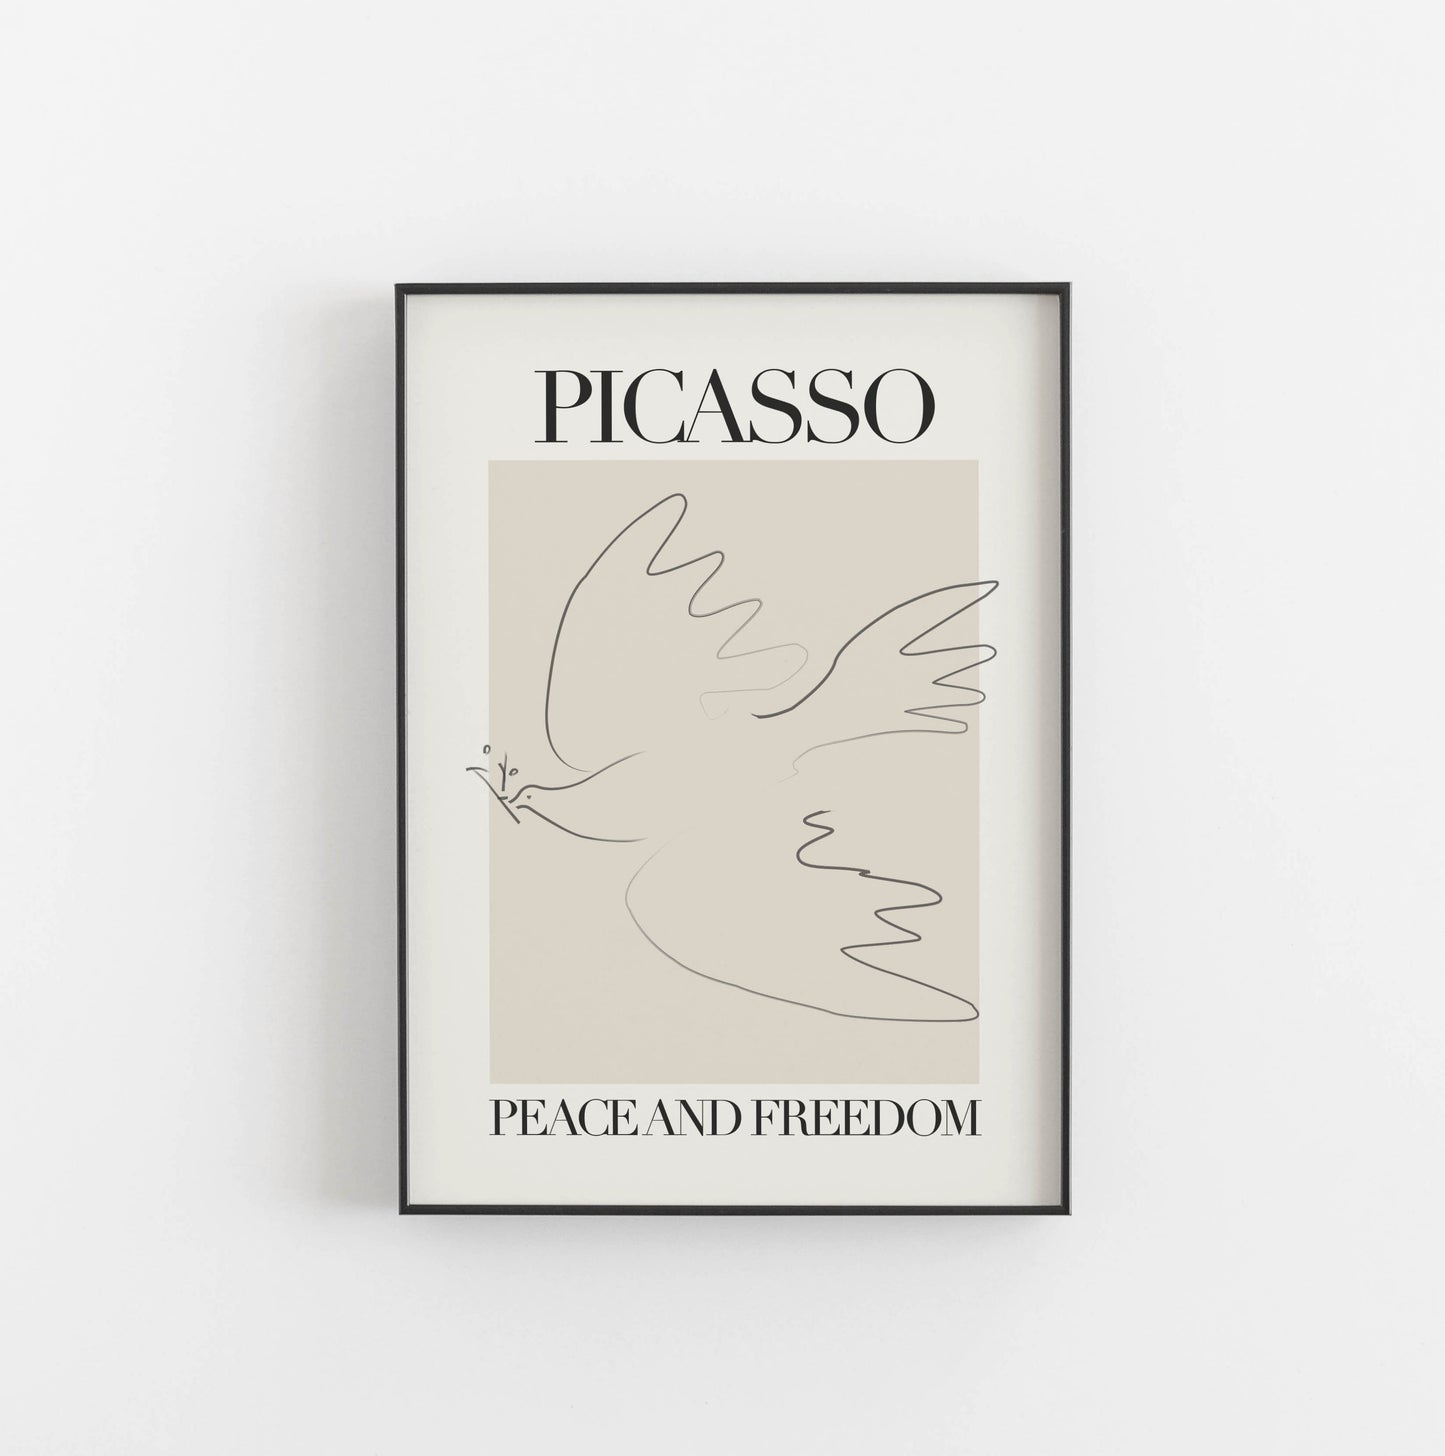 Fred och frihet - Picasso